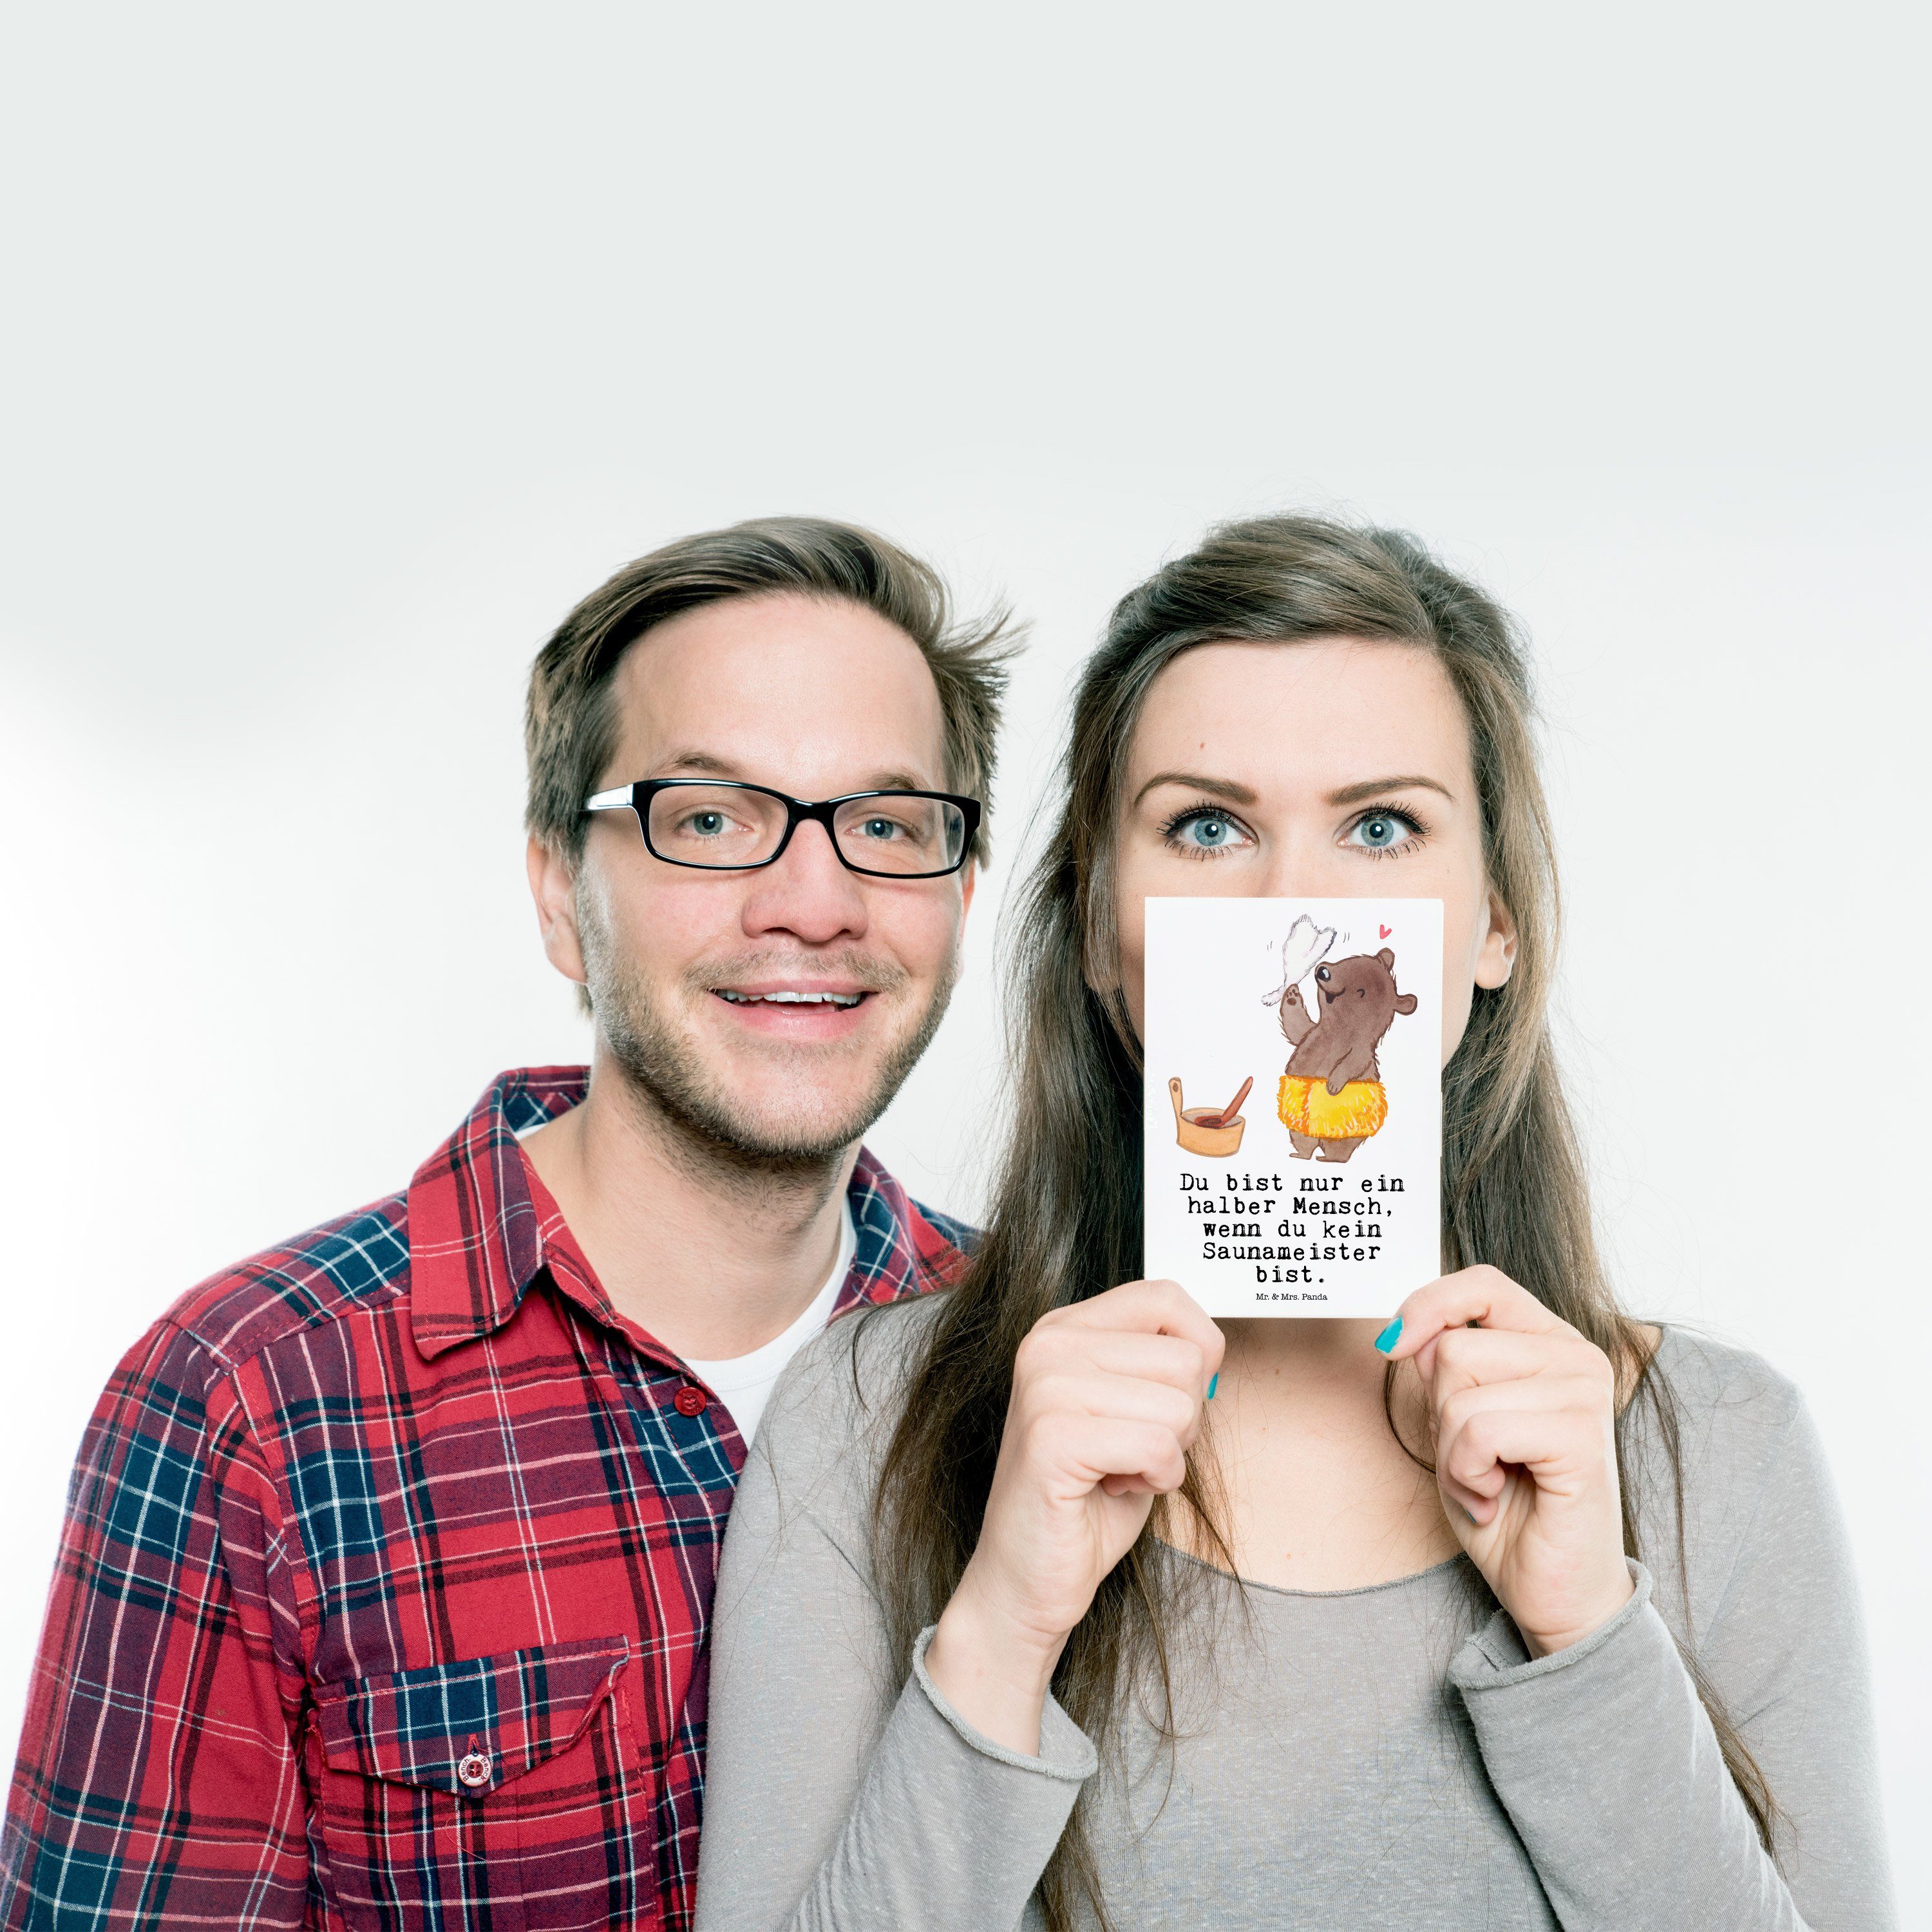 Mr. & Mrs. Weiß - mit Panda Koll Geschenk, Saunameister Herz Dankeskarte, - Postkarte Grußkarte